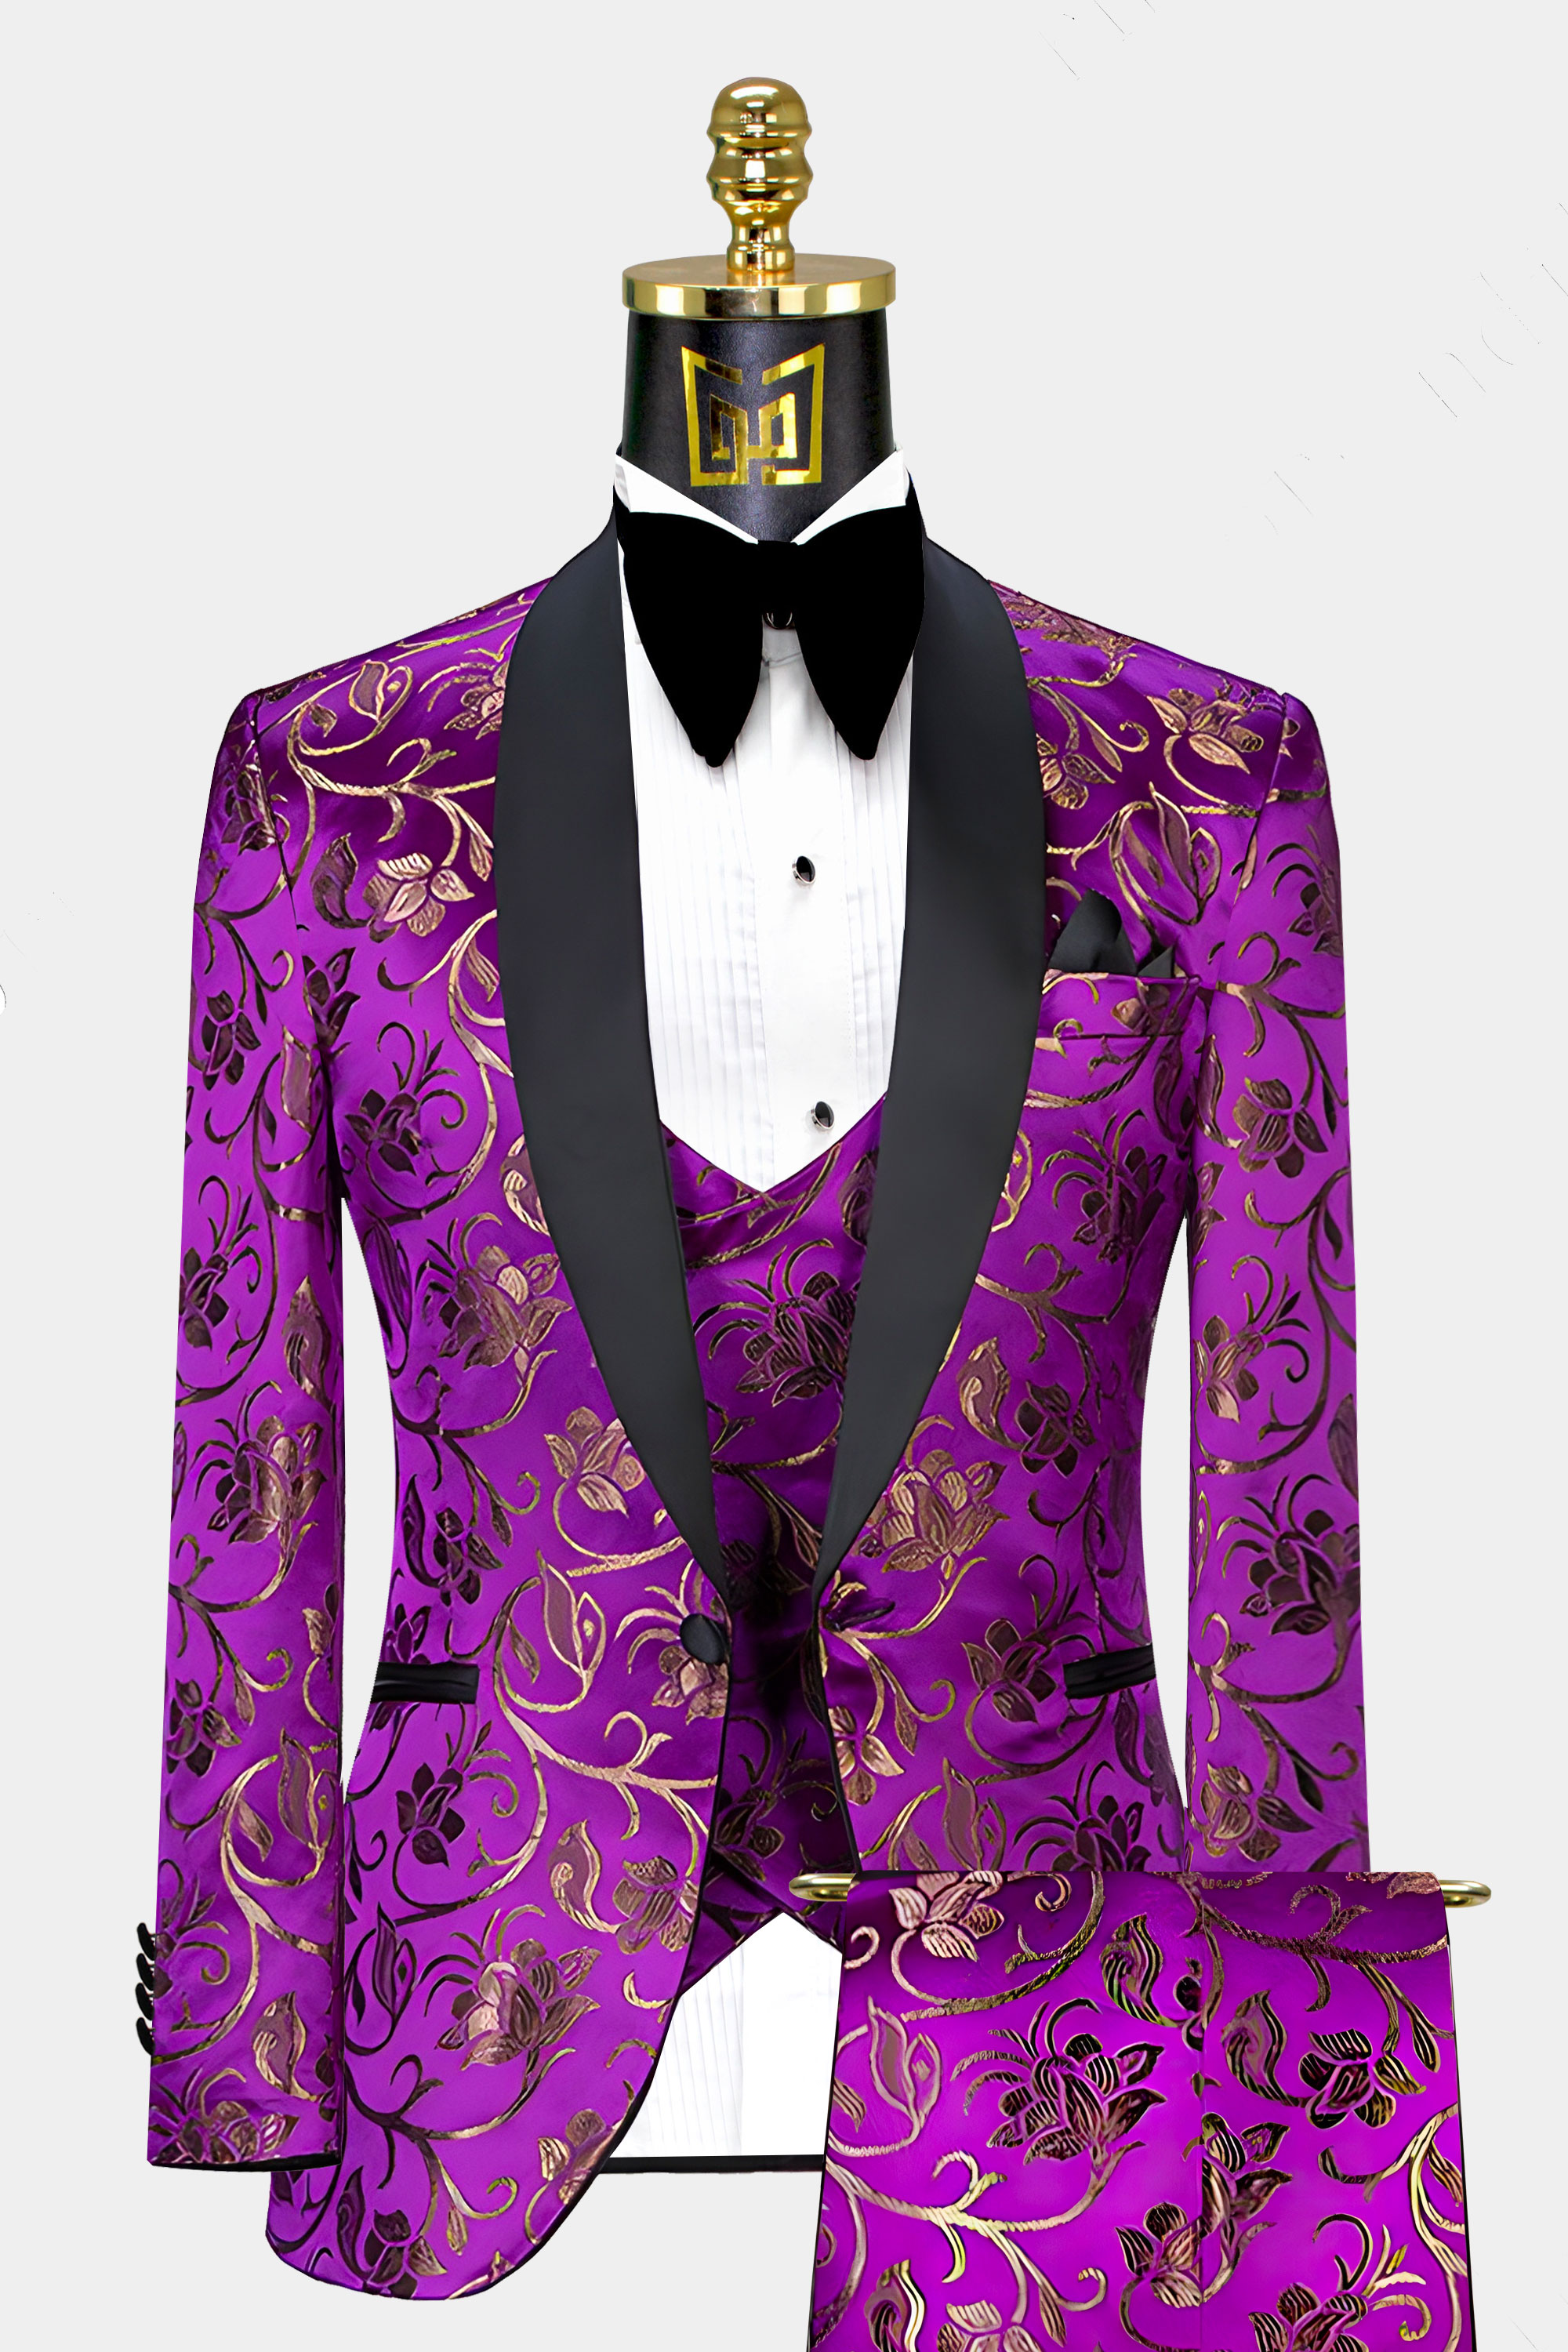 Royal Purple & Gold Floral Tuxedo - 3 Piece